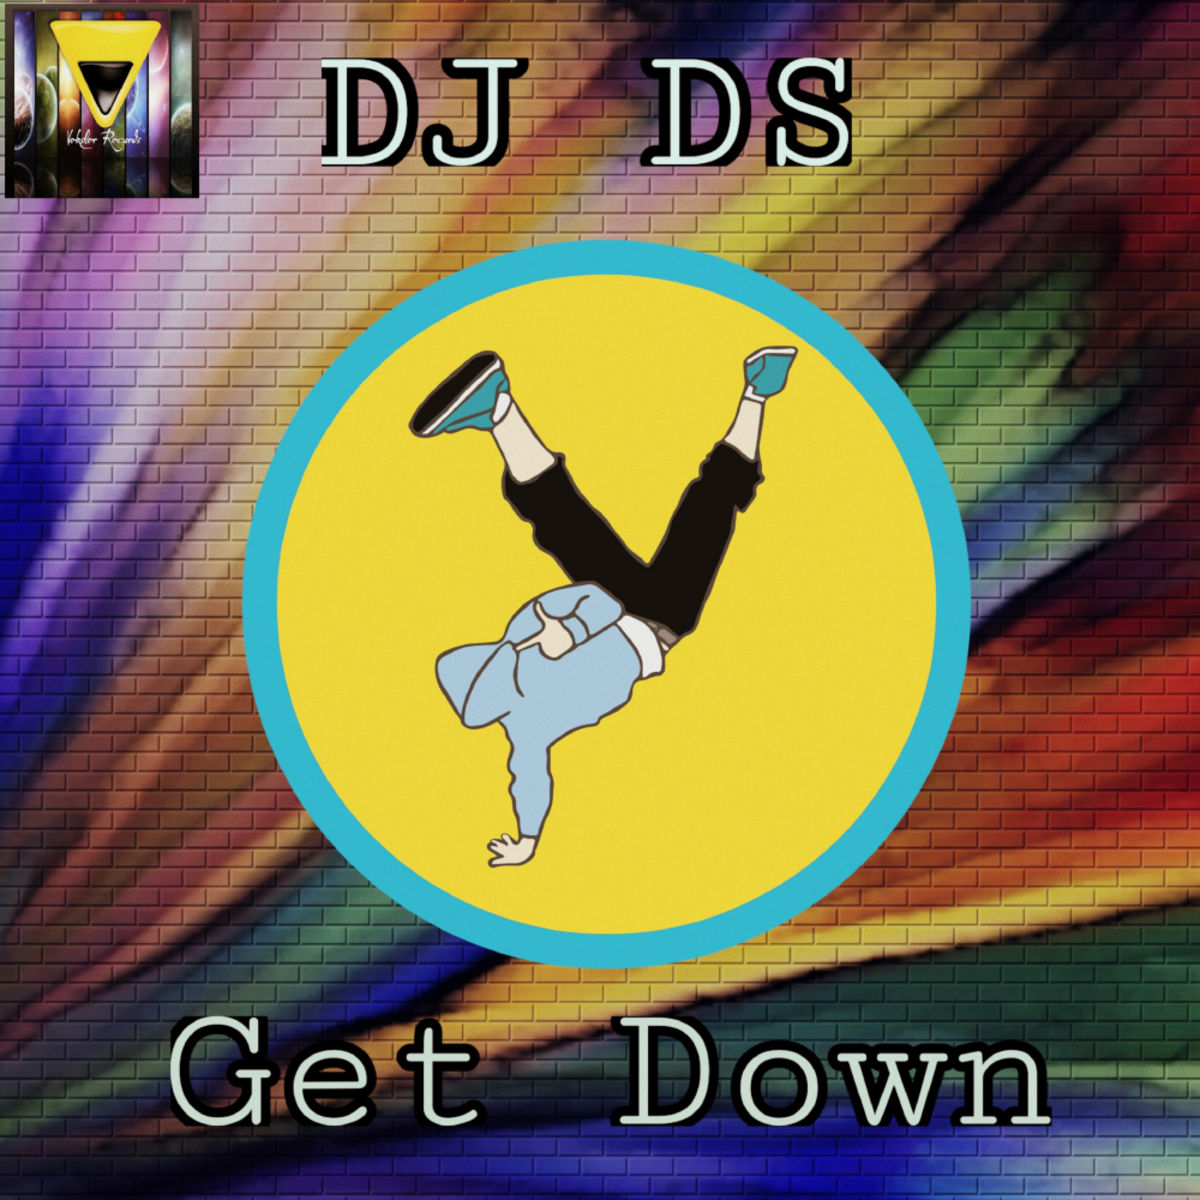 DJ DS - Get Down / Veksler Records